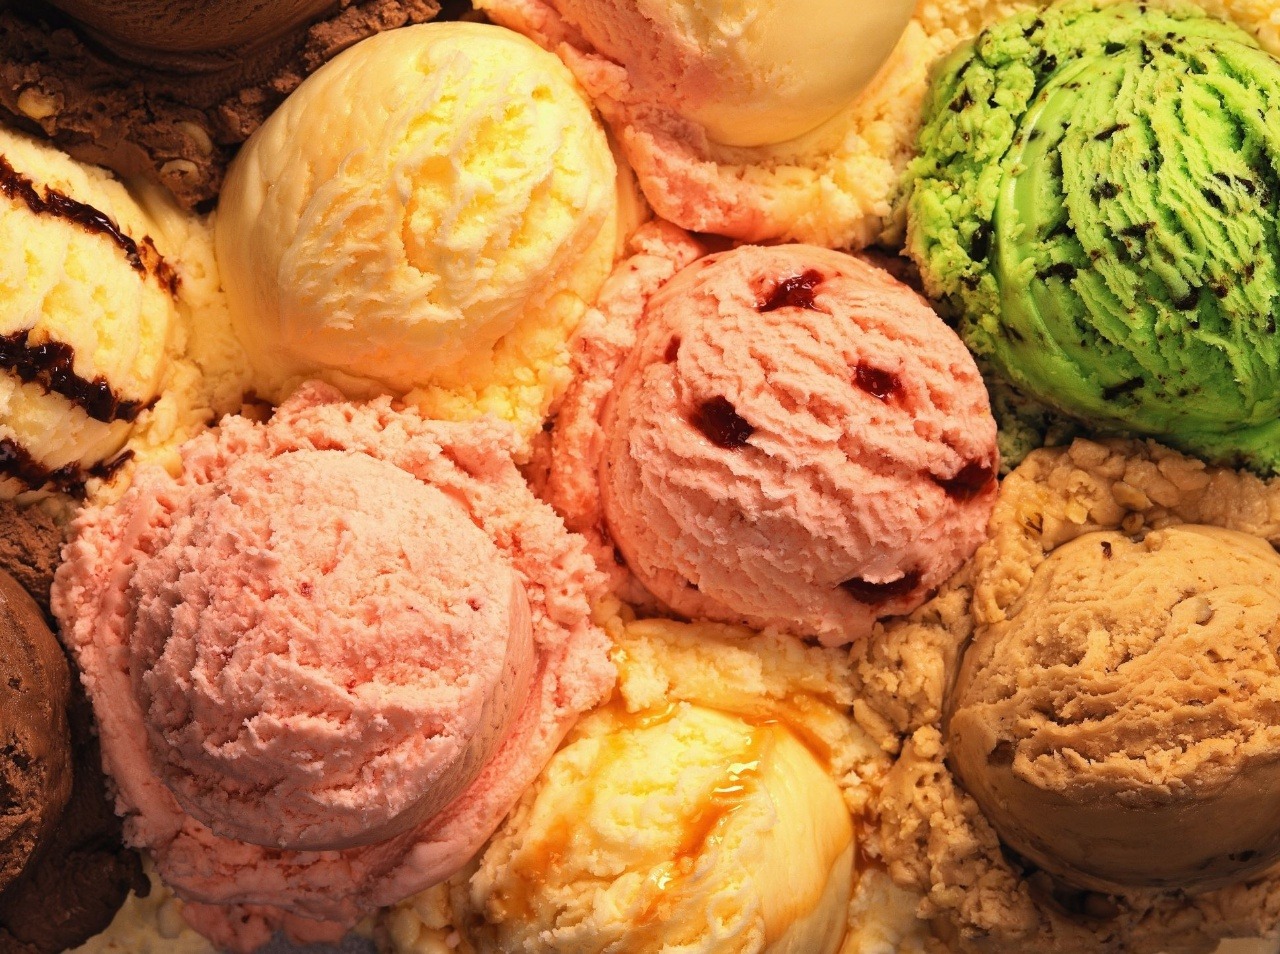 Ak máte radi zmrzlinu, pozor na tráviace ťažkosti, ktoré môže vyvolať.